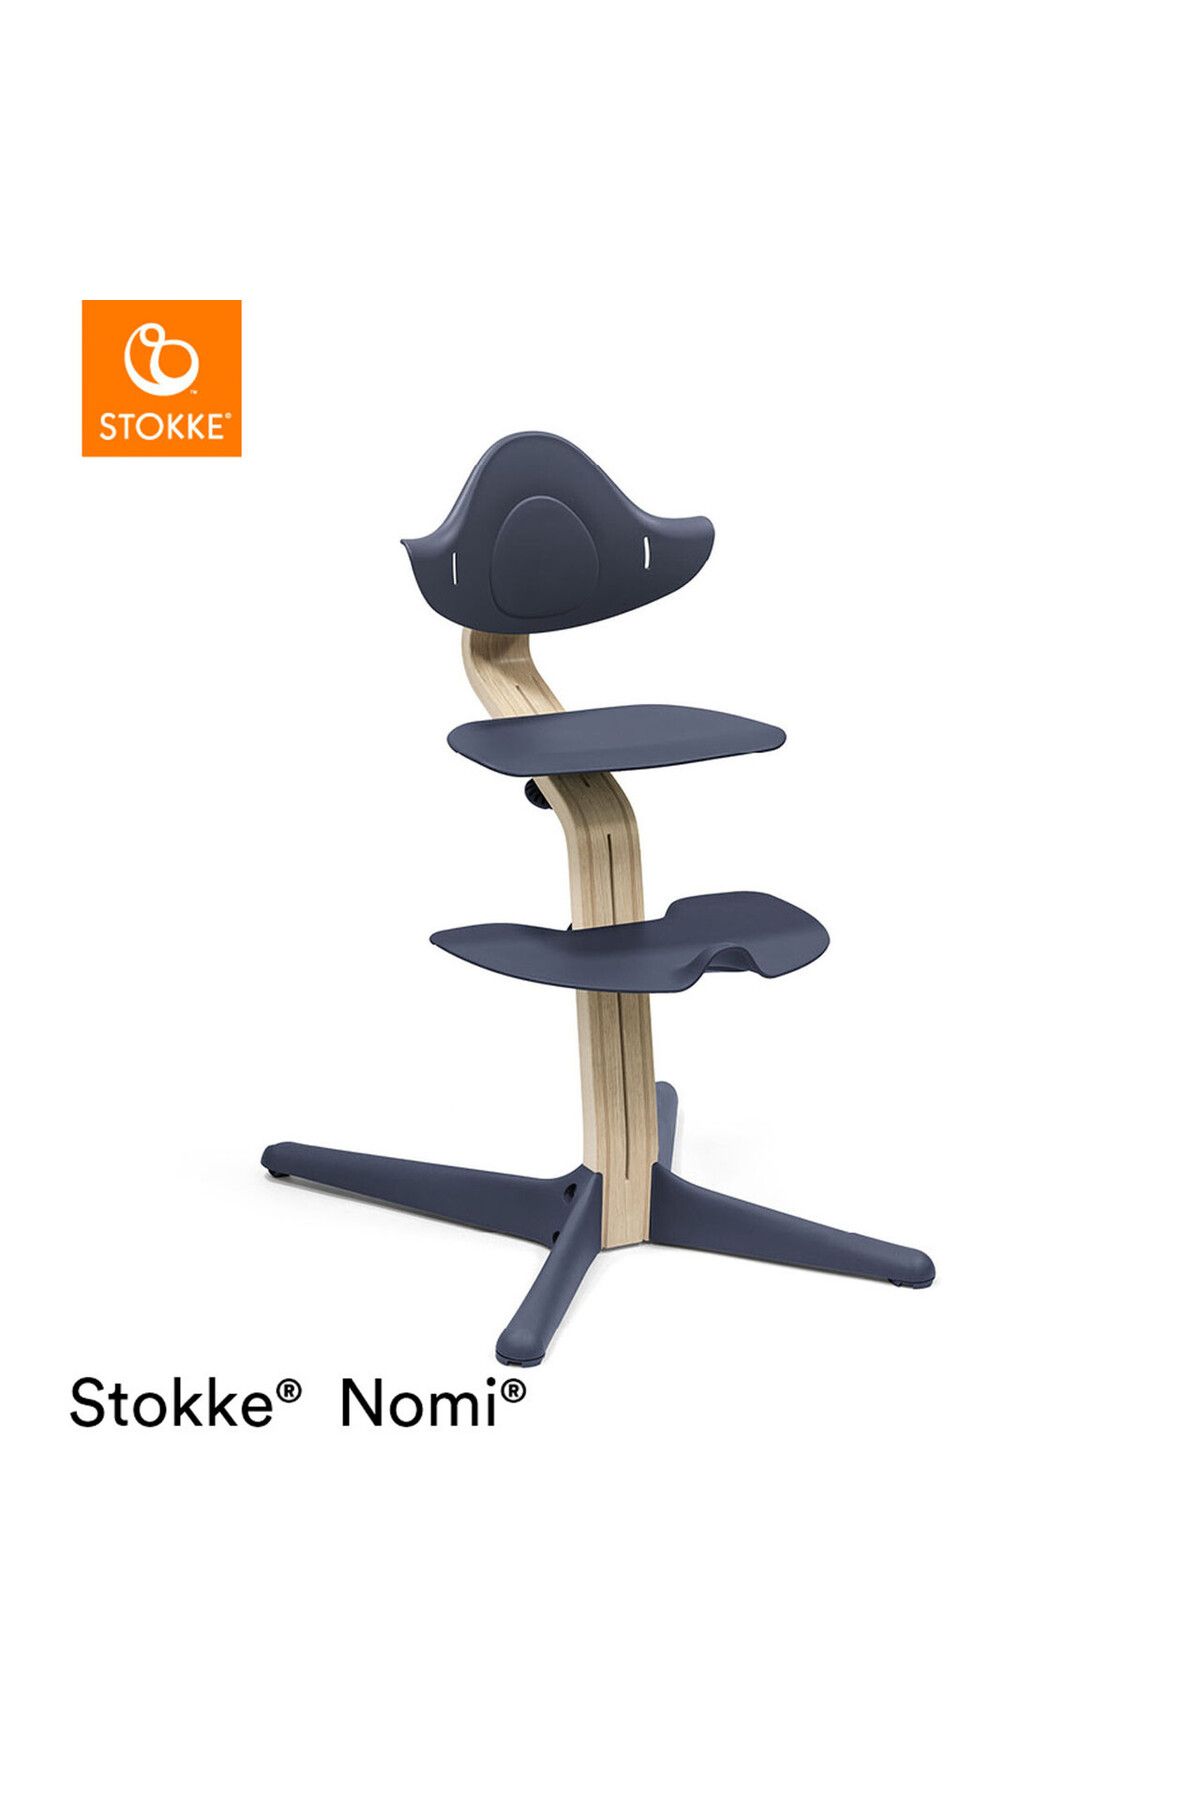 Stokke Nomi Sandalye: Ergonomik Tasarım ve Dayanıklılığın Buluşması Mama Sandalyesi